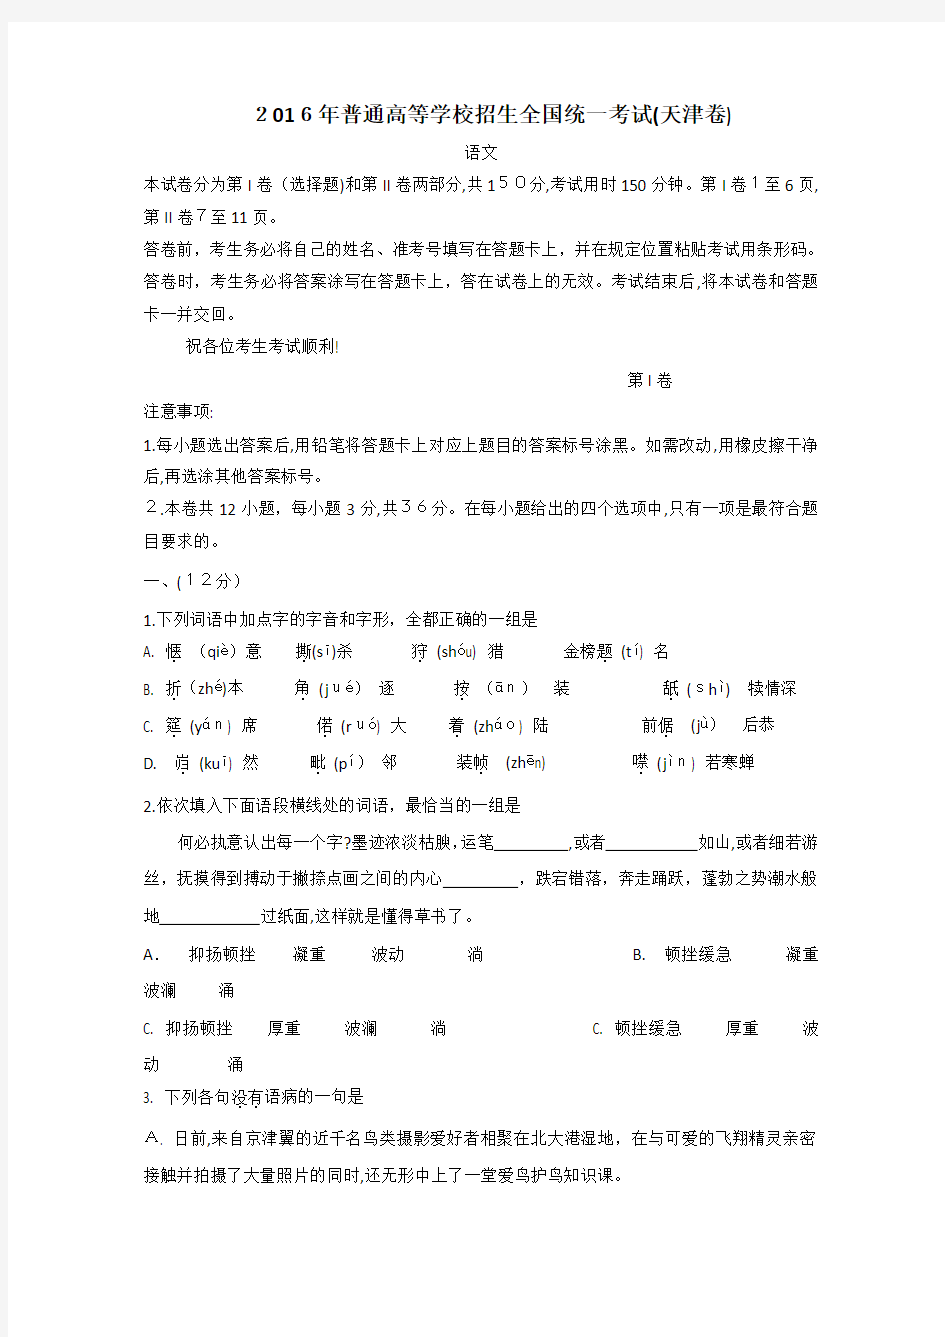 2016年高考天津卷语文试题(含标准答案)汇总